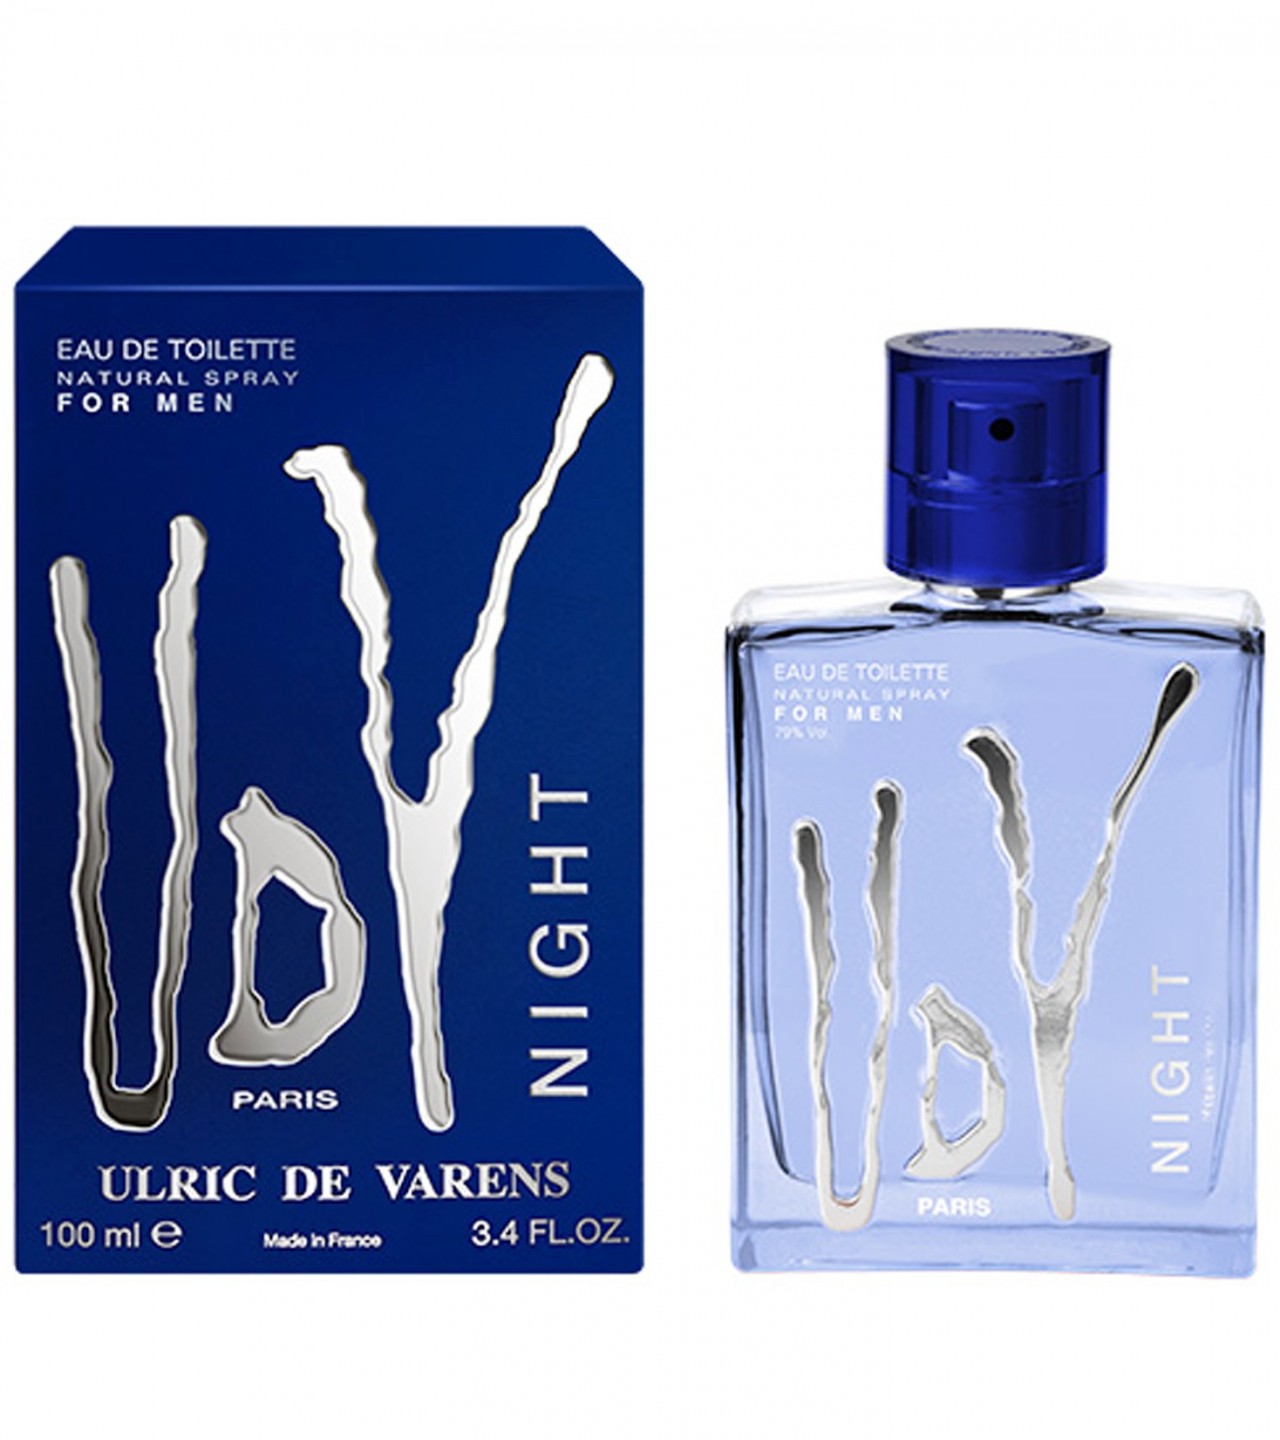 Ulric de Varens ( UDV ) Night Perfume For Men - Eau De Toilette - 100 ml